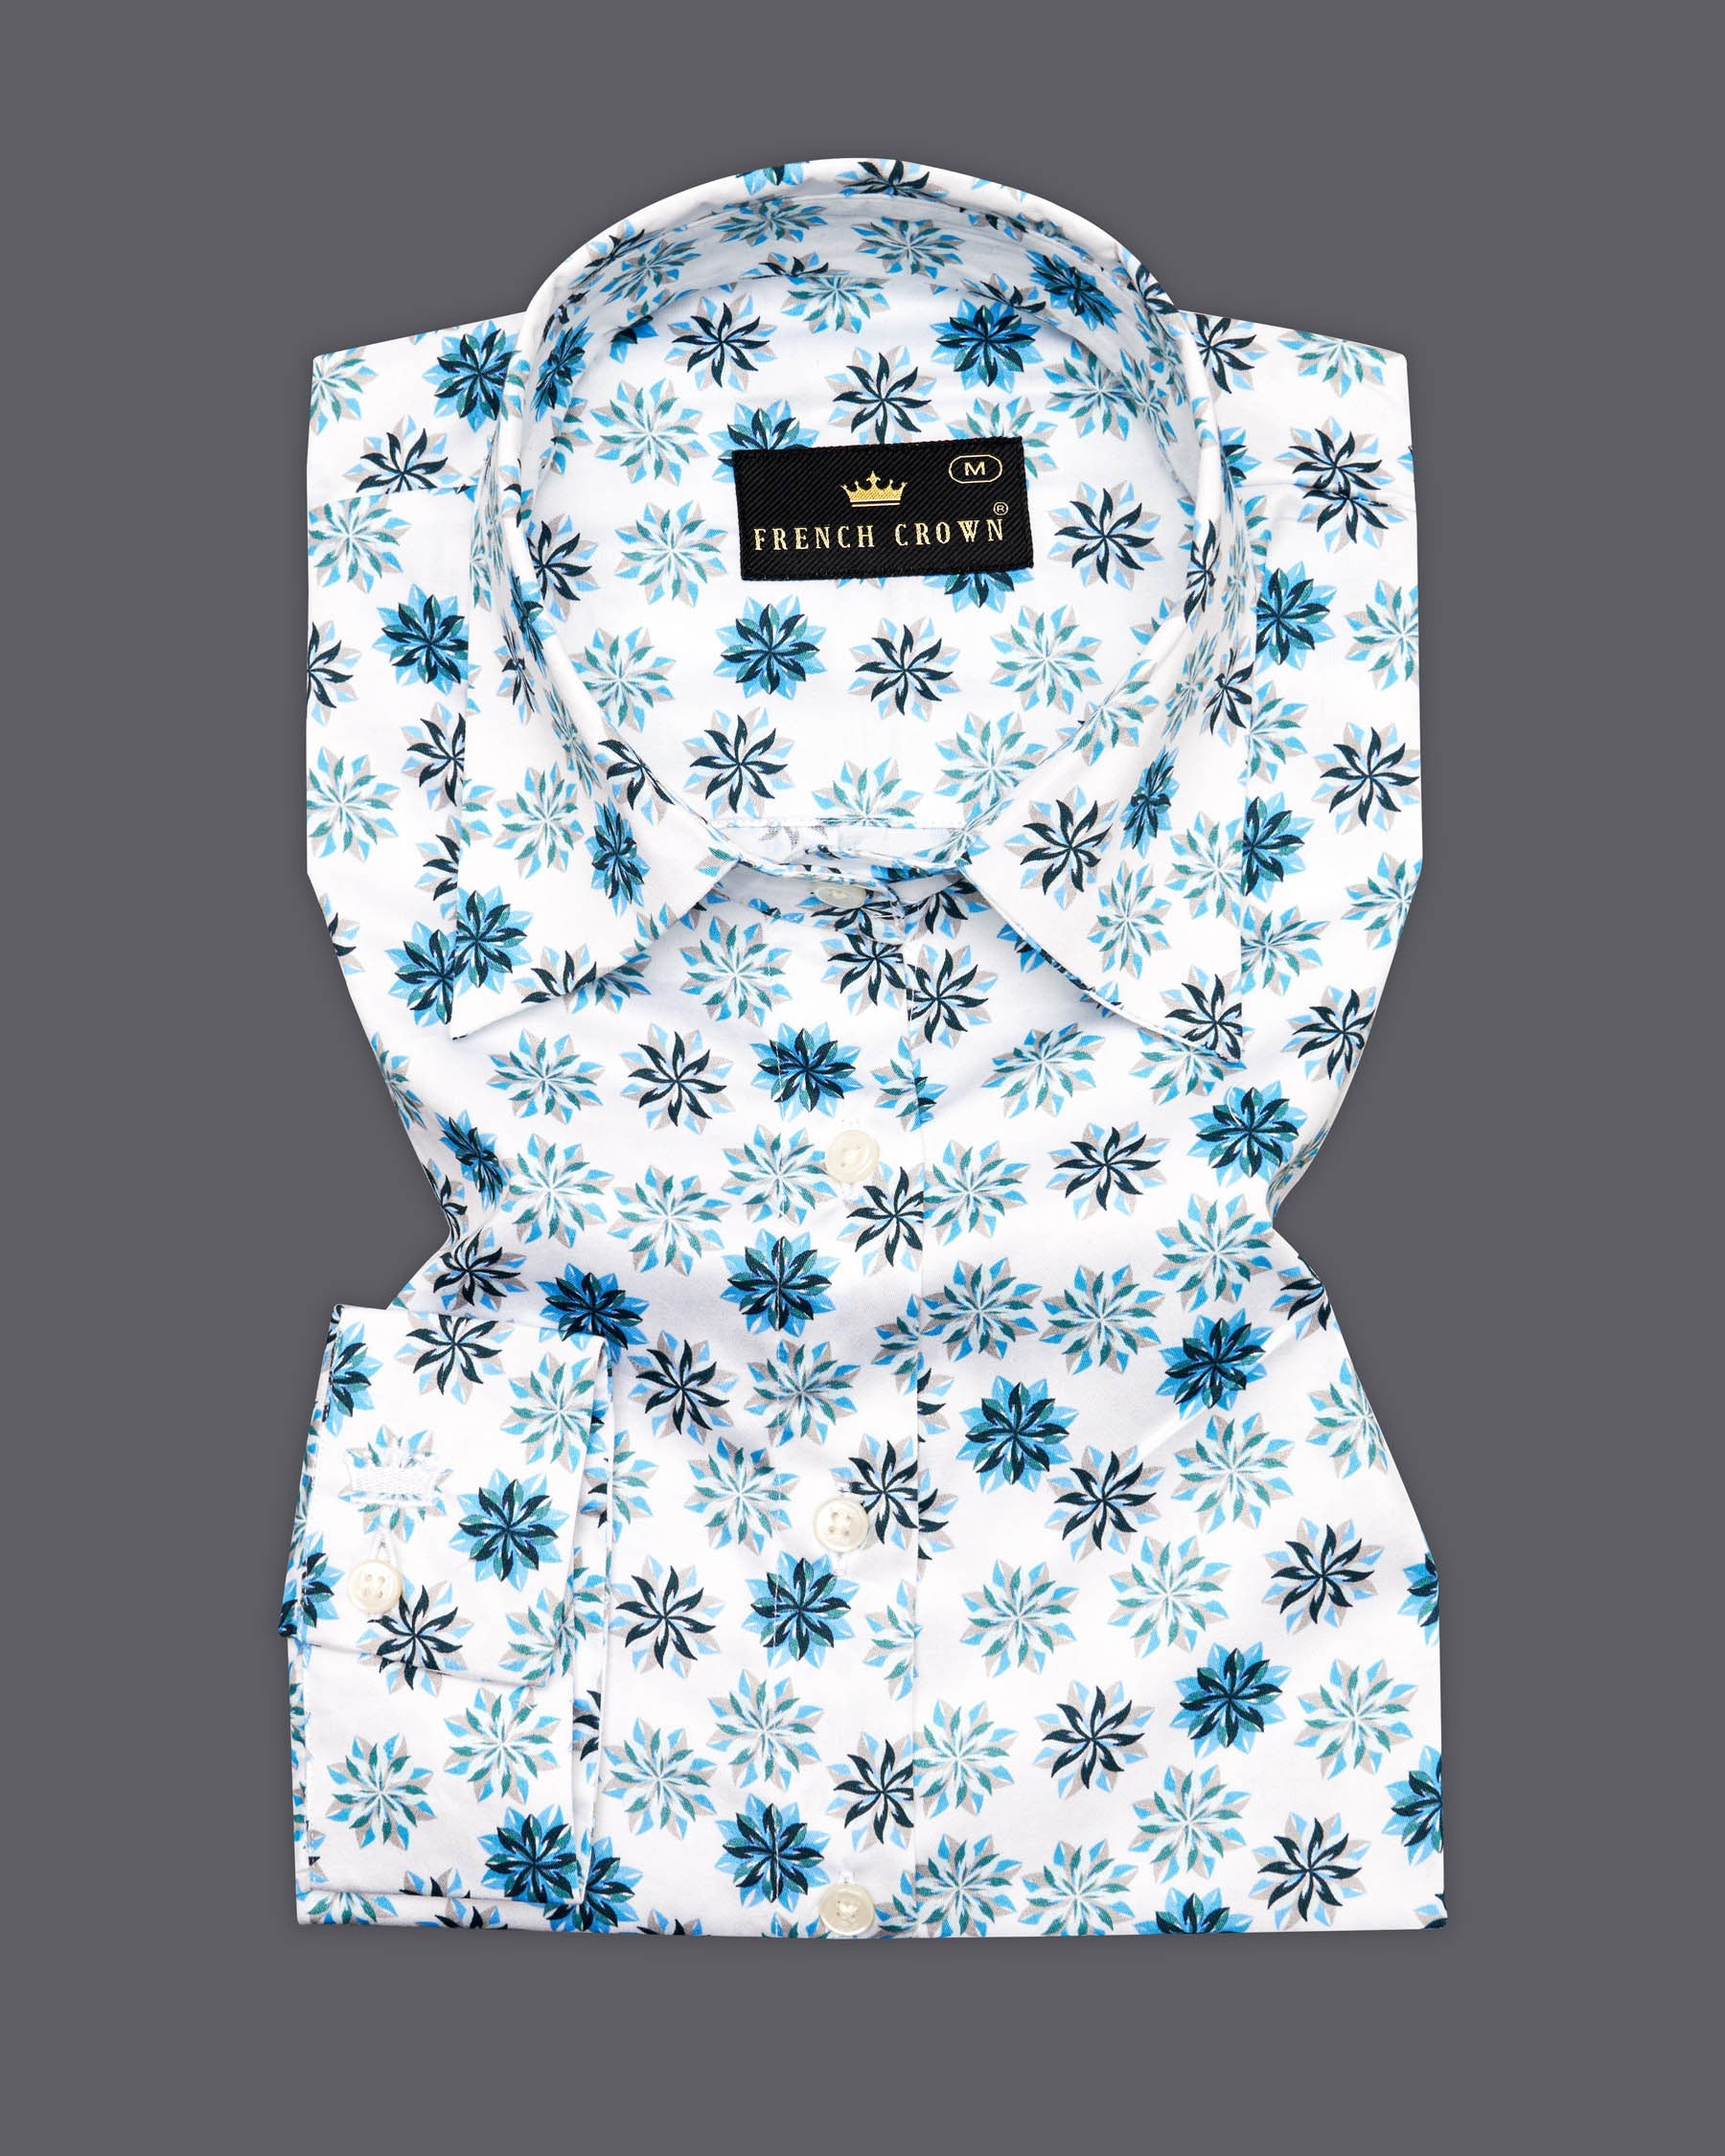 Merino Beige Printed Super Soft Premium Cotton Women’s Shirt WS058-M-32, WS058-M-34, WS058-M-36, WS058-M-38, WS058-M-40, WS058-M-42